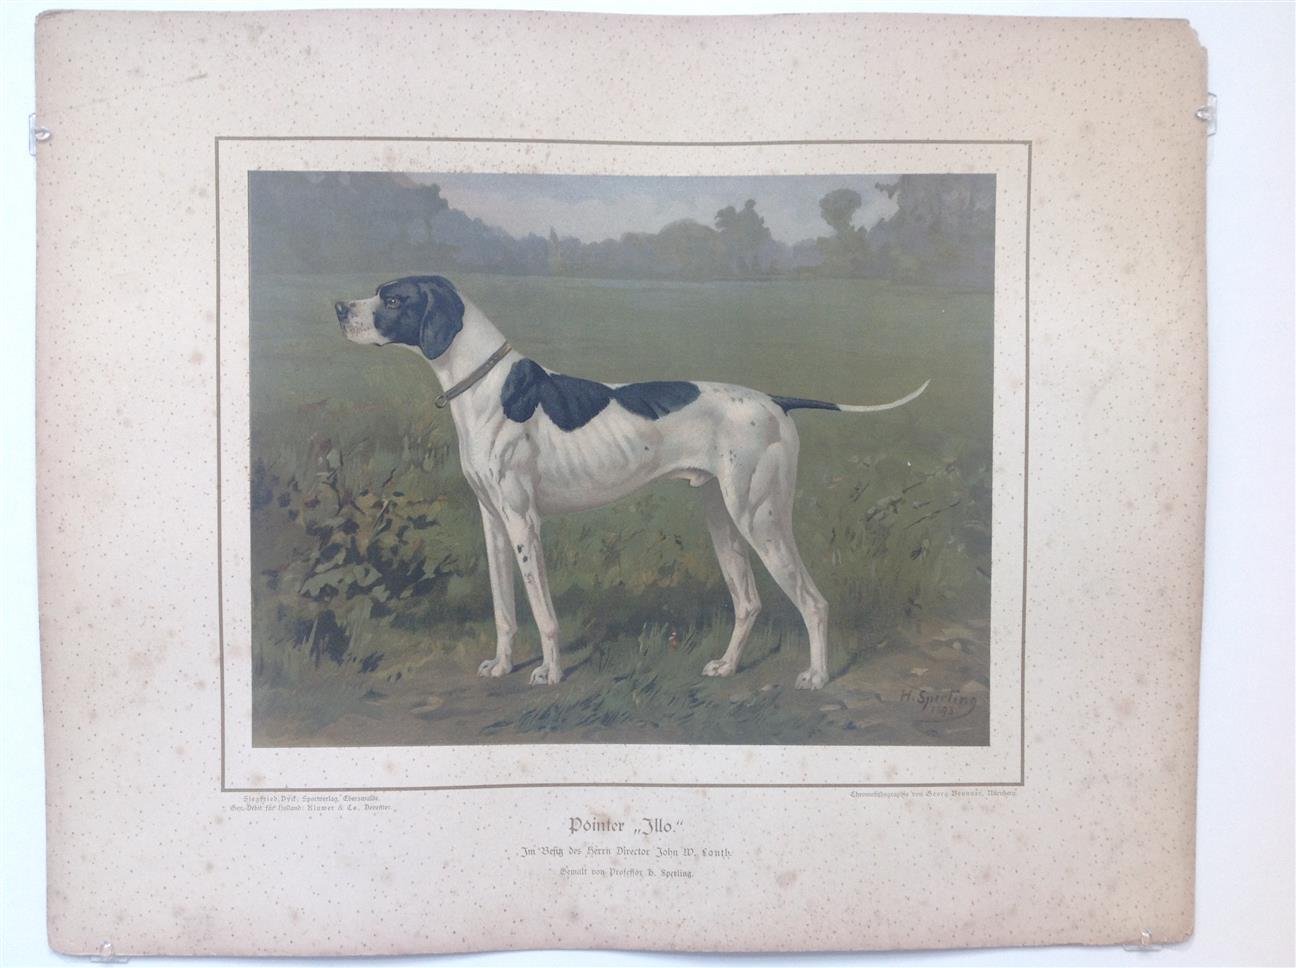 H. Sperling - lithograaf : Wilhelm Greve - (DECORATIEVE PRENT,  LITHO - DECORATIVE PRINT, LITHOGRAPH -) Rashond - Engelse pointer  / English Pointer dog